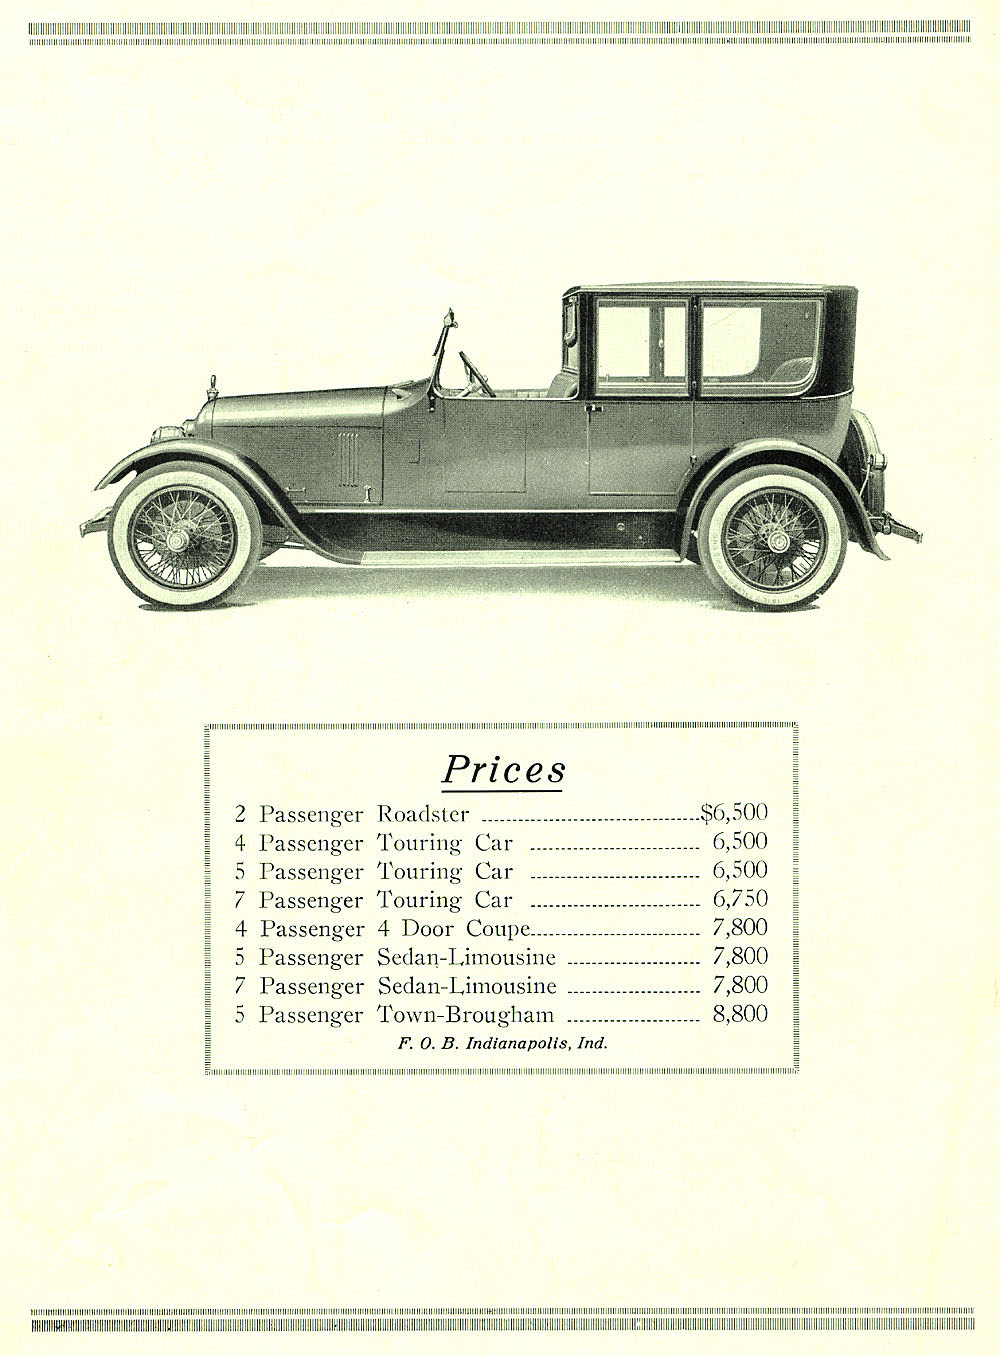 1922 Duesenberg Model A Brochure Page 8